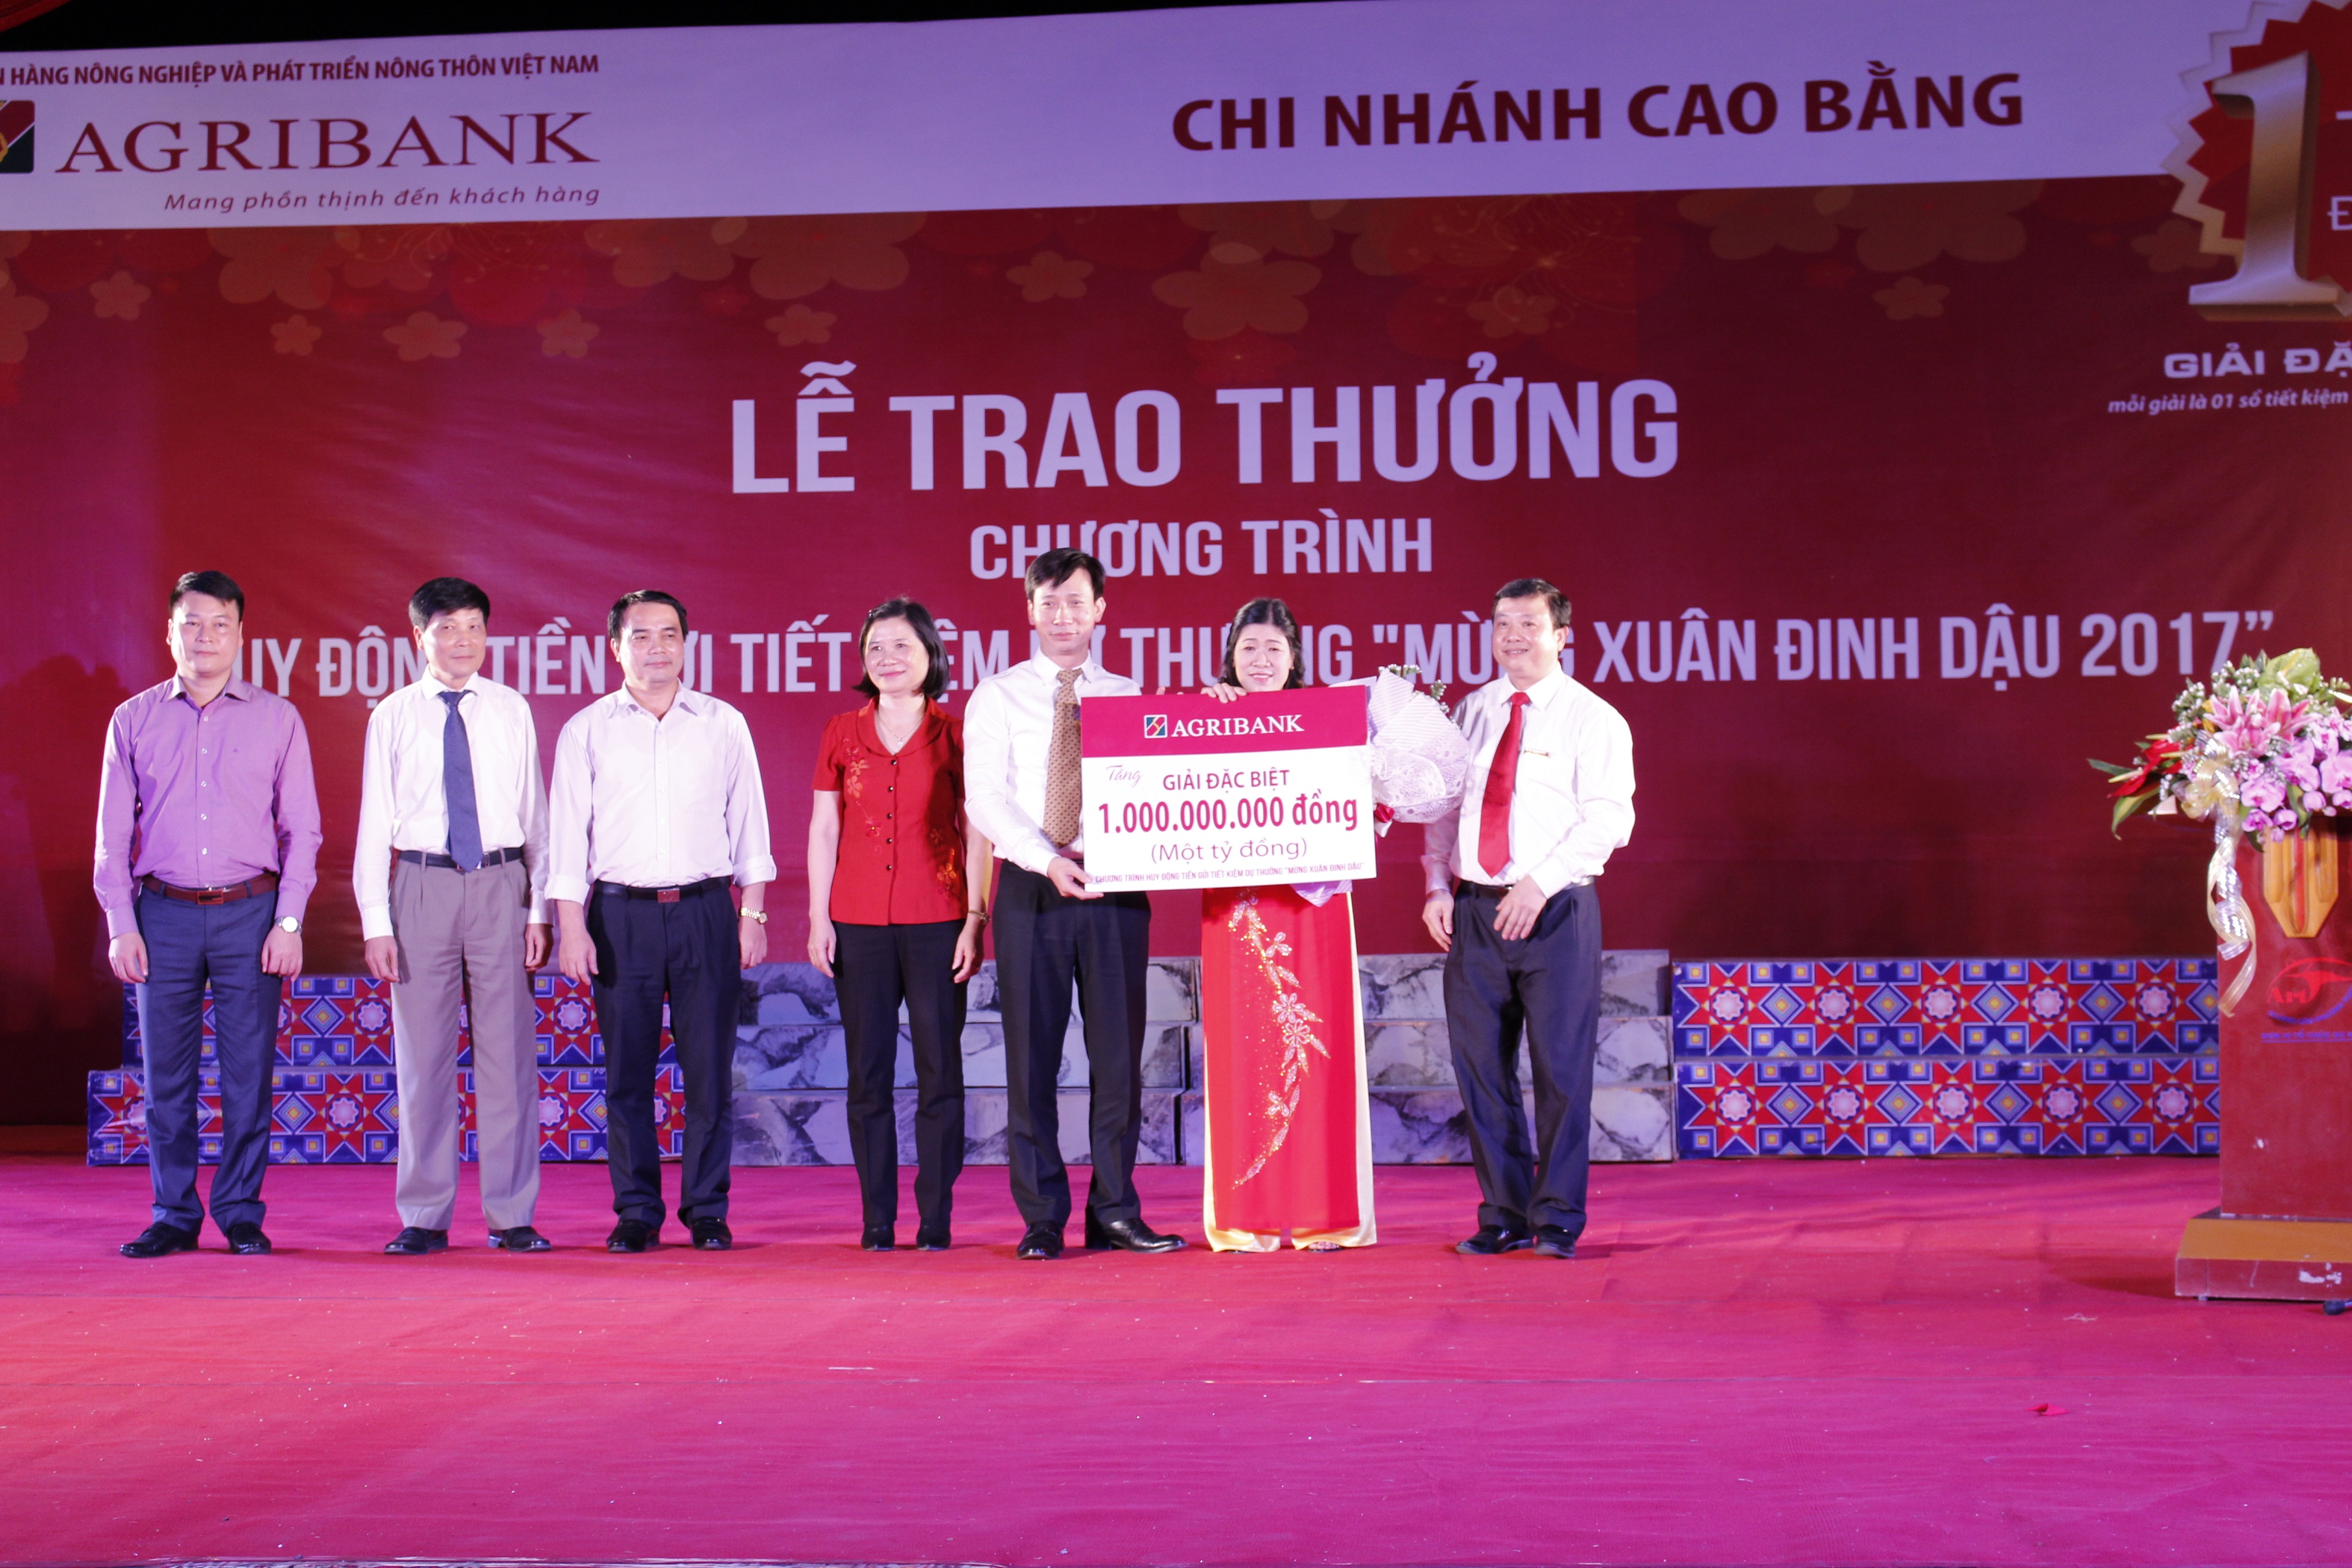 Lần đầu tiên giải đặc biệt 1 tỷ đồng từ chương trình tiết kiệm dự thưởng của Agribank đến với tỉnh Cao Bằng